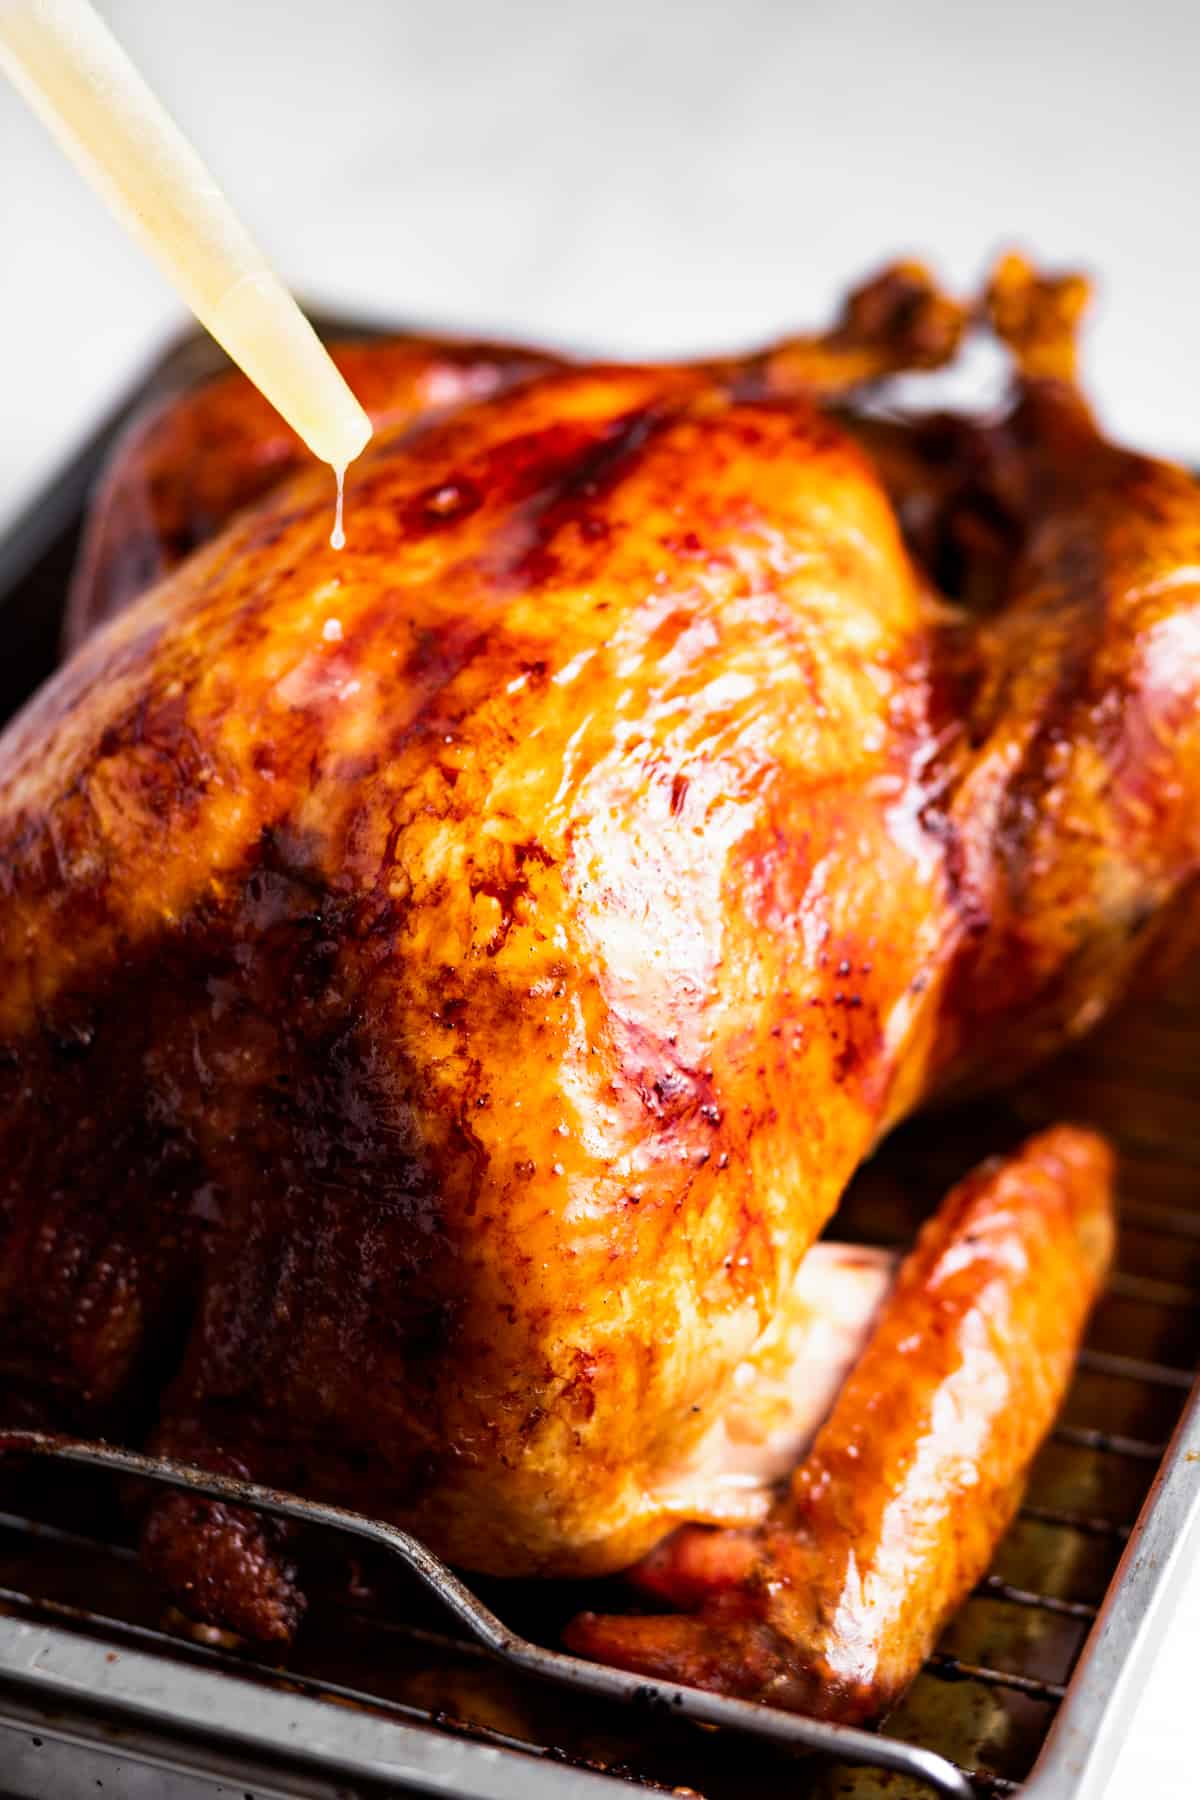 Basting the oven roasted turkey.